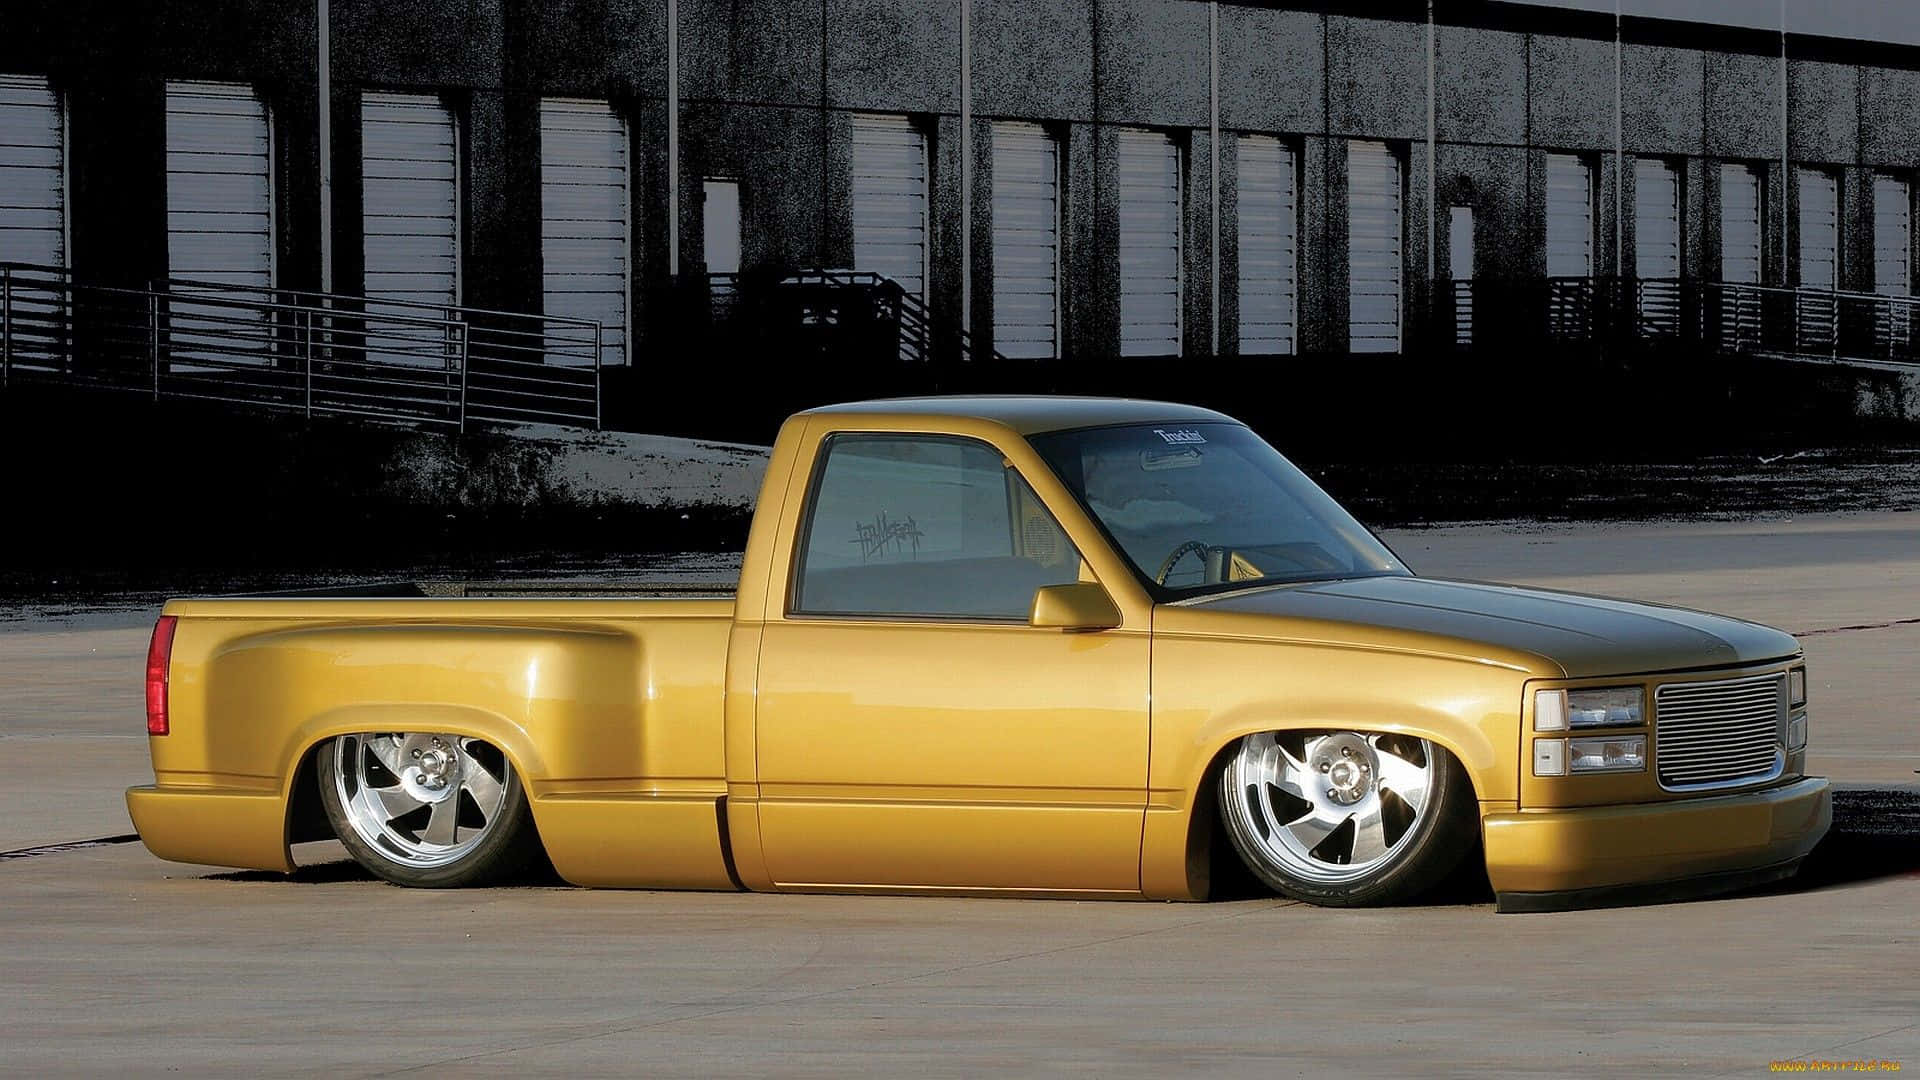 En gul lastbil parkeret i en parkeringsplads Wallpaper